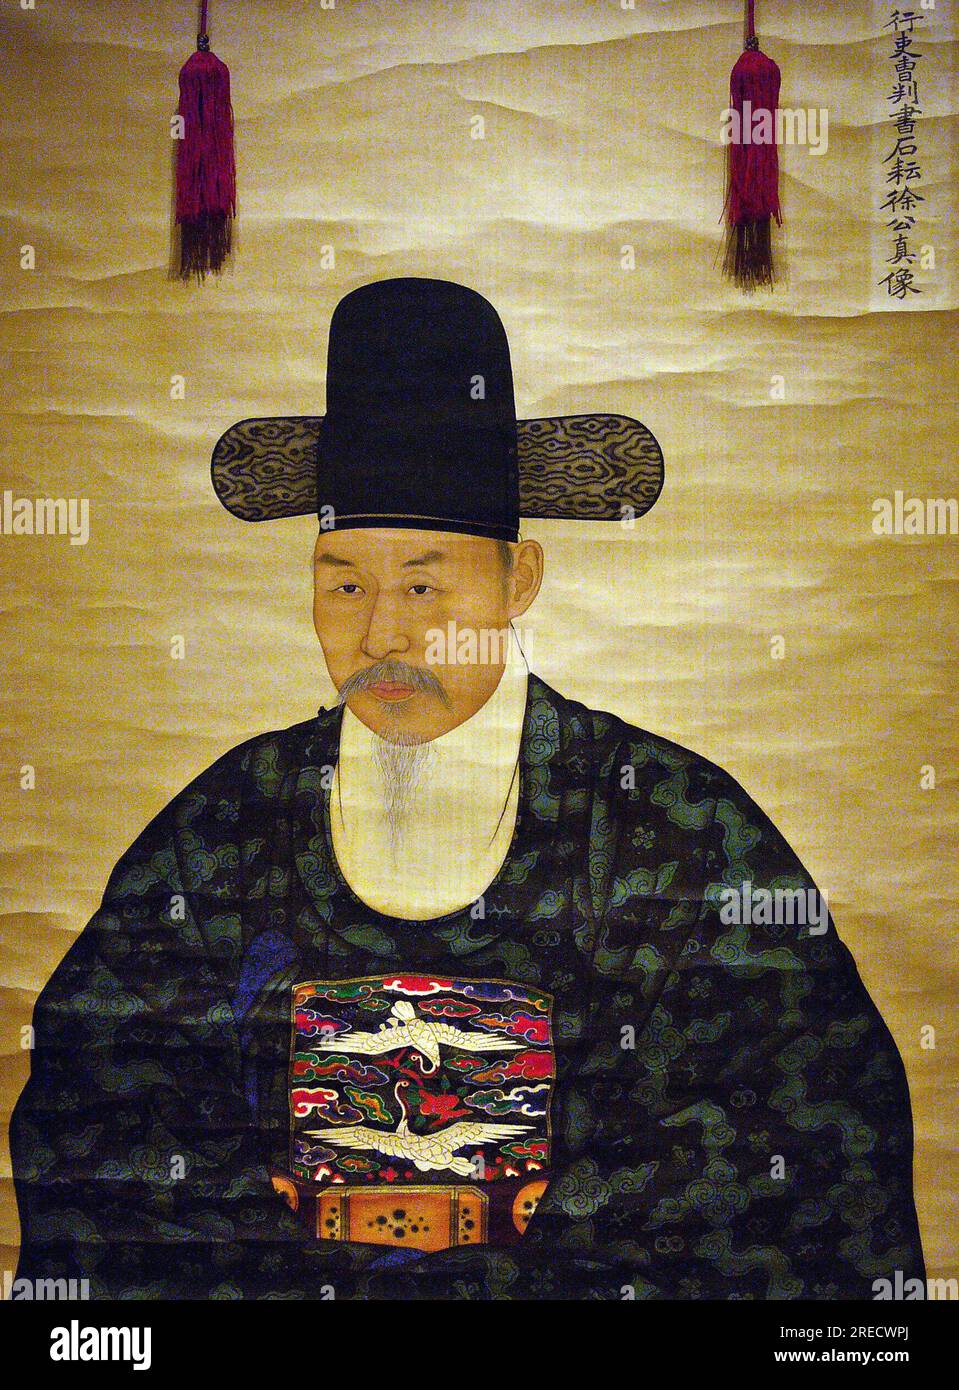 Portrait de Seo Heonsun (ou 'Chijang'), (1801-1868) ministre, peinture sur soie sur panneau, anonyme, XIXe siecle sous la periode Joseon, Coree. Photographie, Musee National de Seoul, Republique de Coree, 2006. Stock Photo